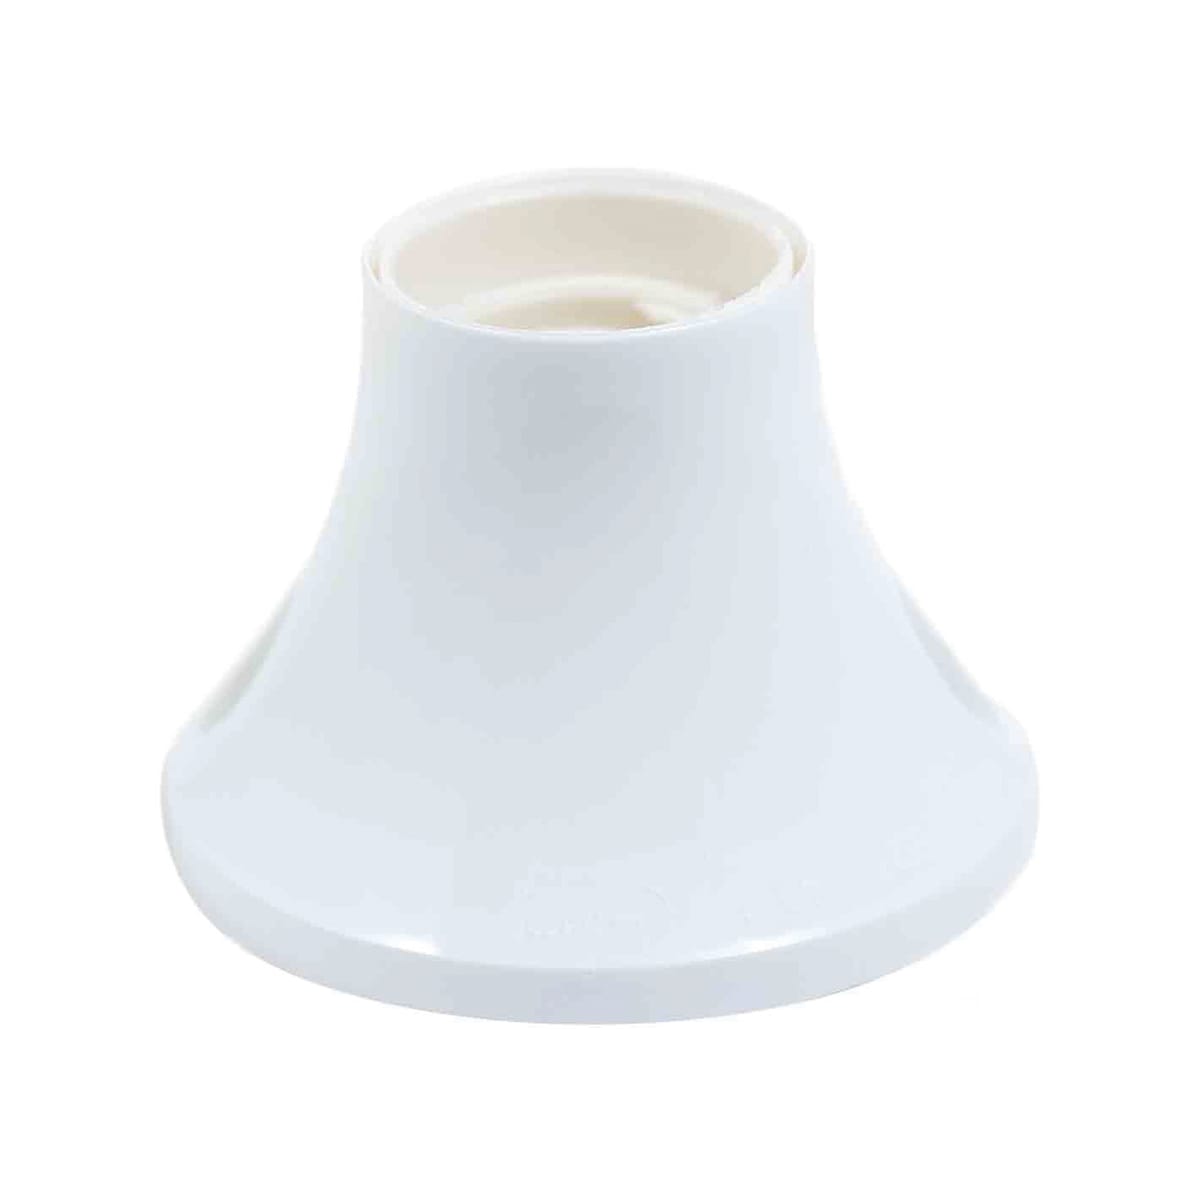 CEILING LAMP HOLDER E27 PLASTIC WHITE